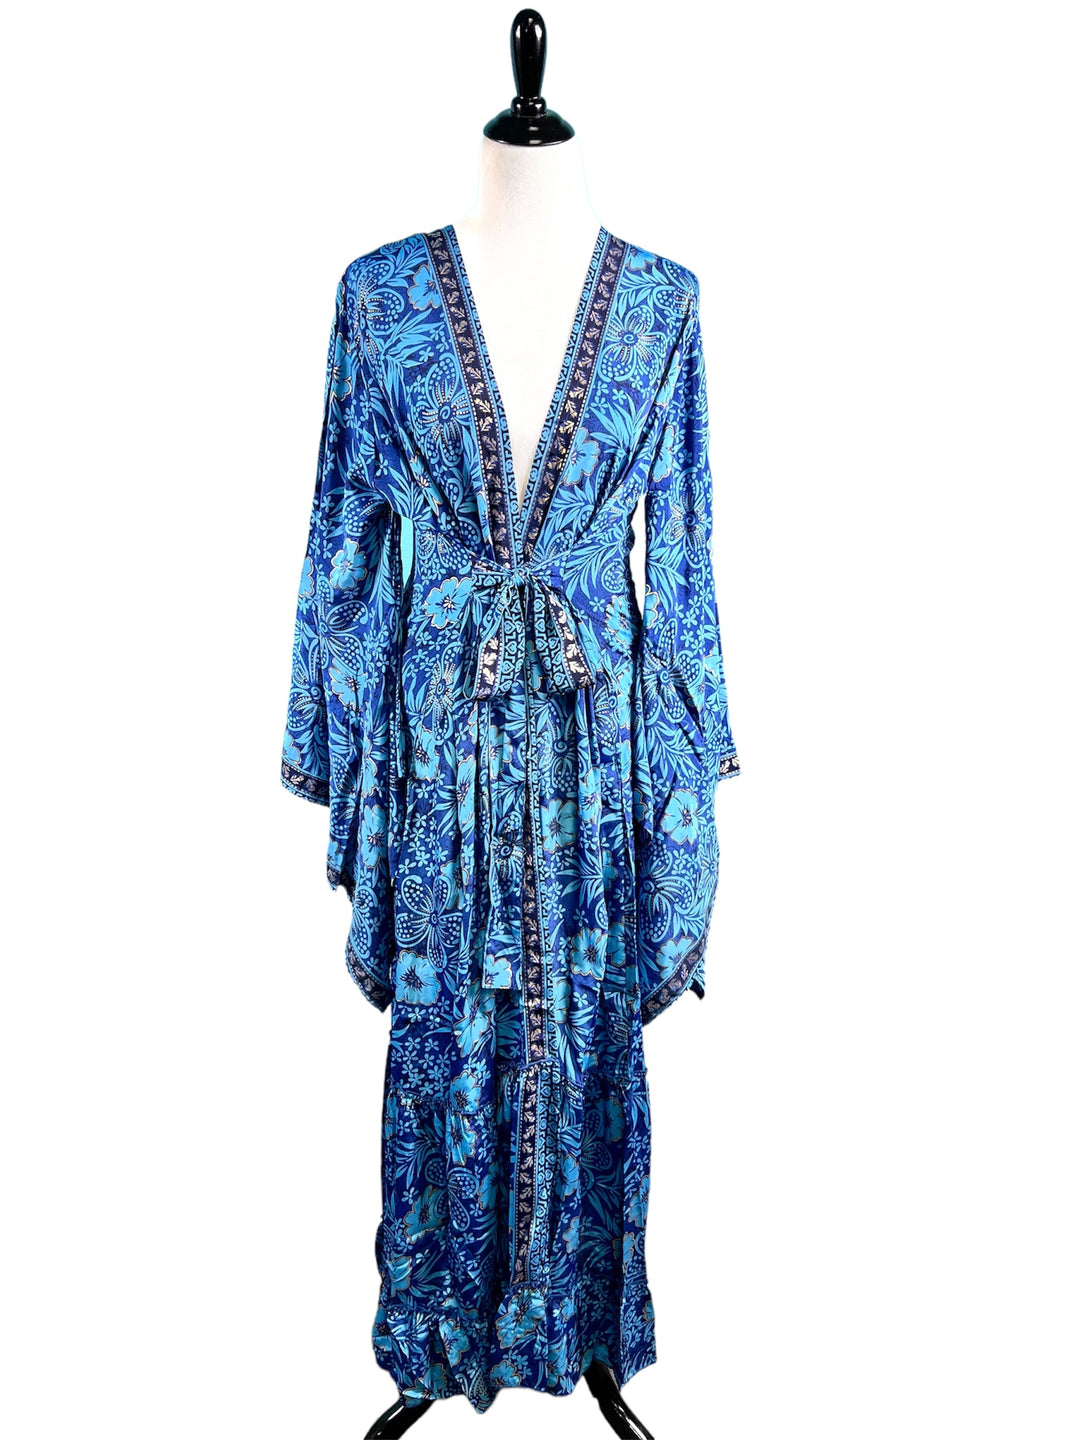 The Royal Blue Kimono Collection